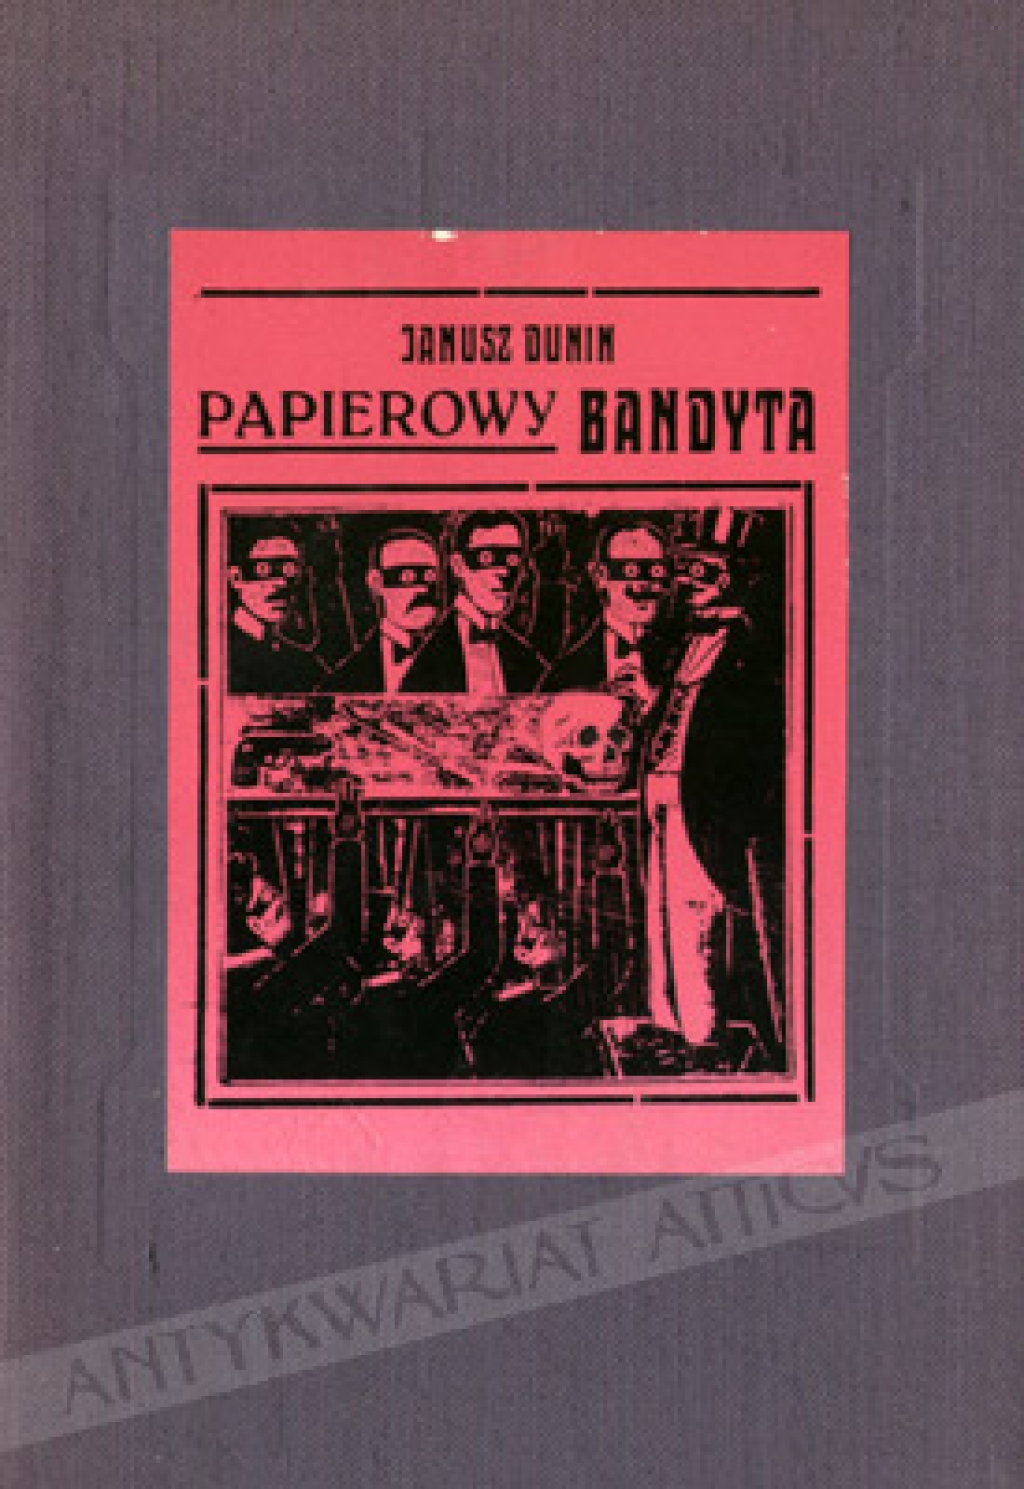 Papierowy bandyta. Książka kramarska i brukowa w Polsce